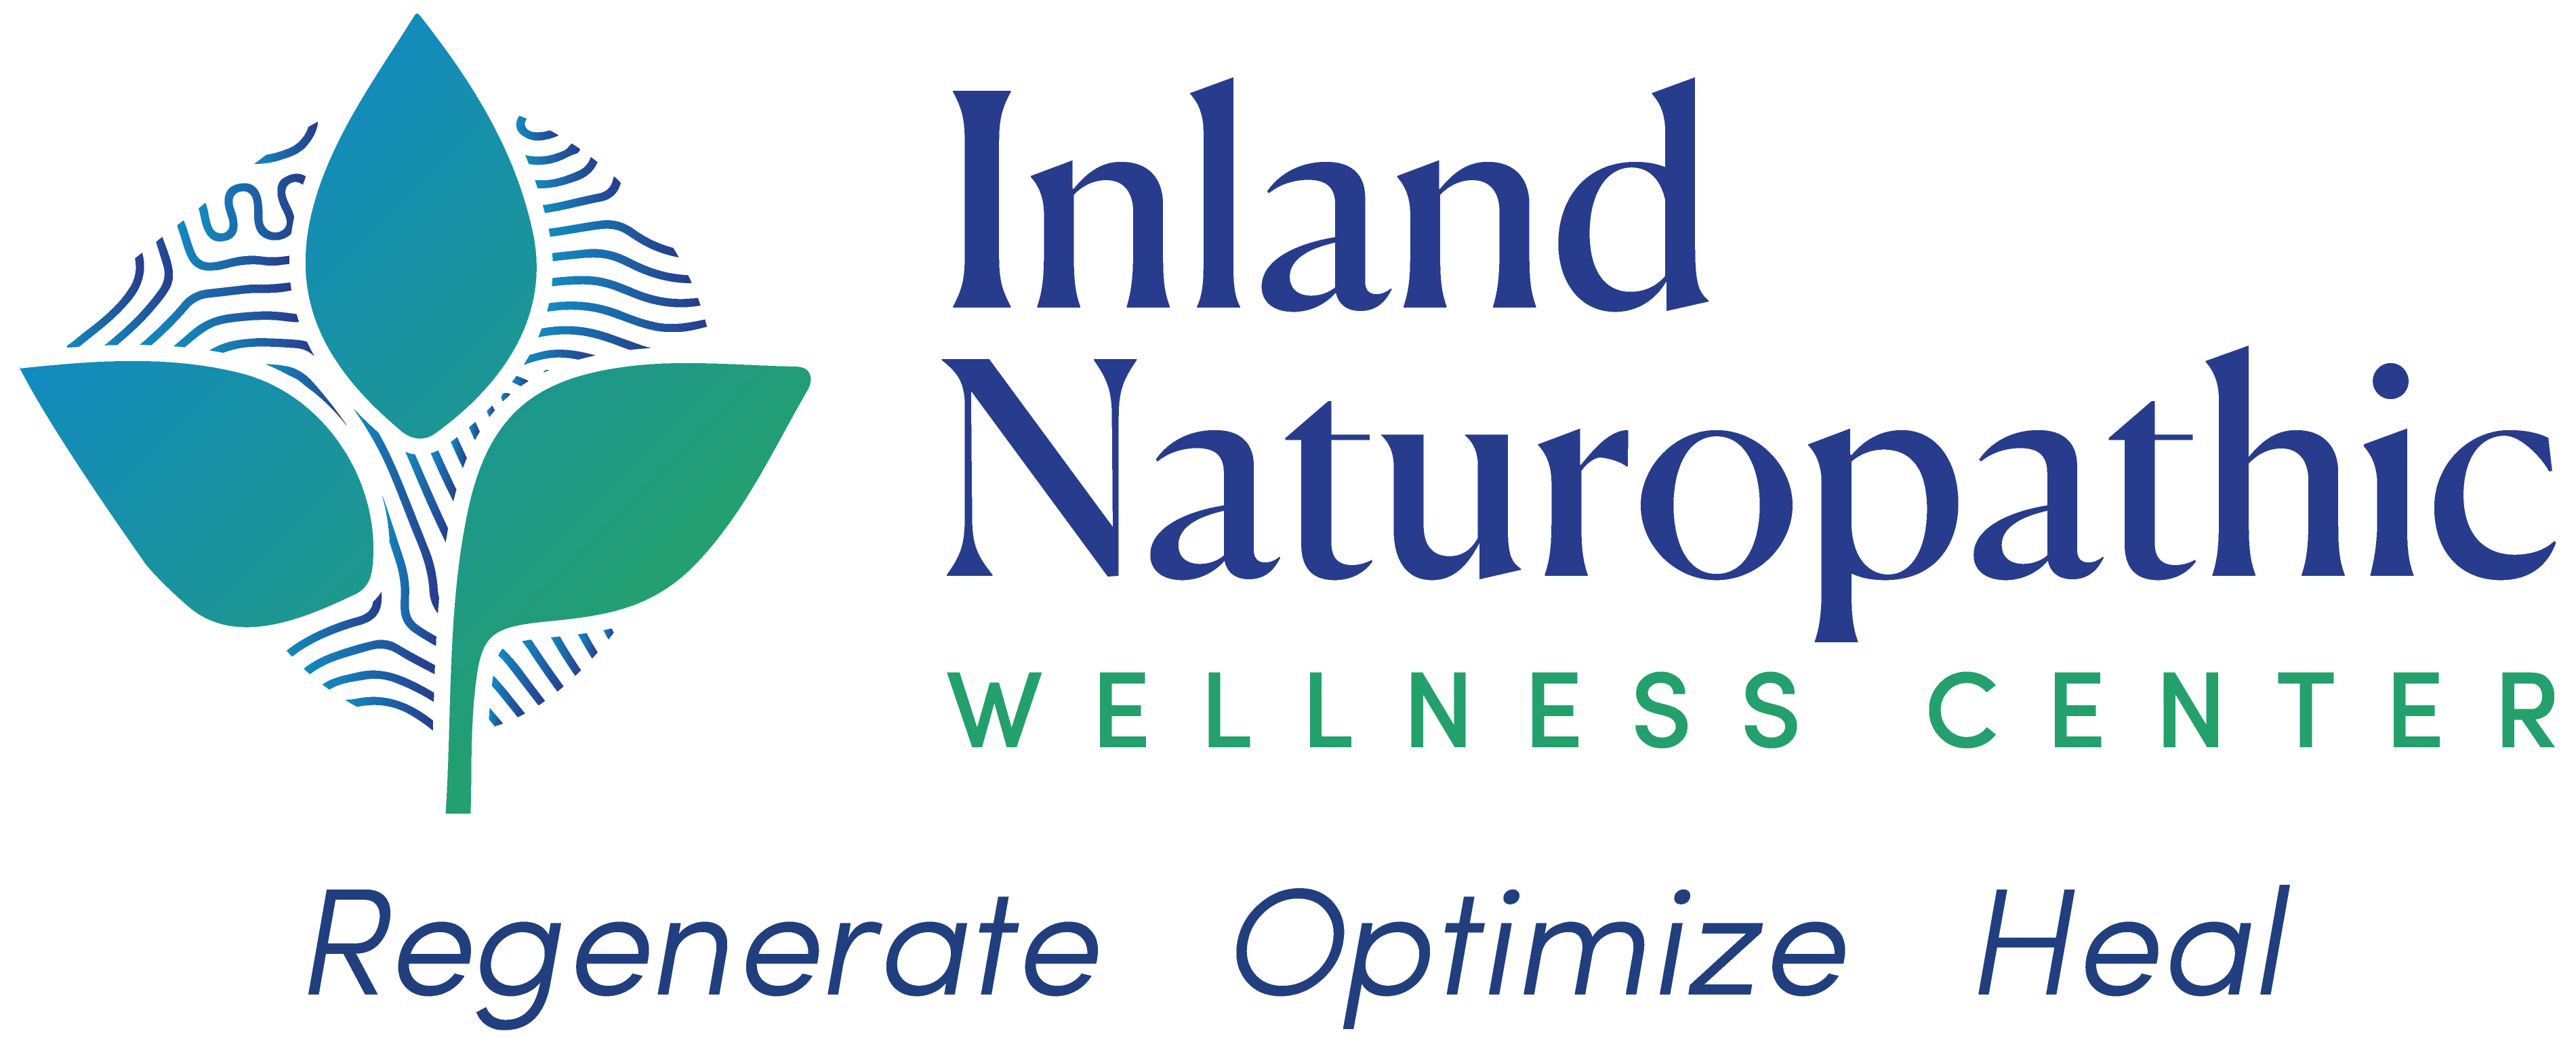 Inland Naturopathic Wellness Center